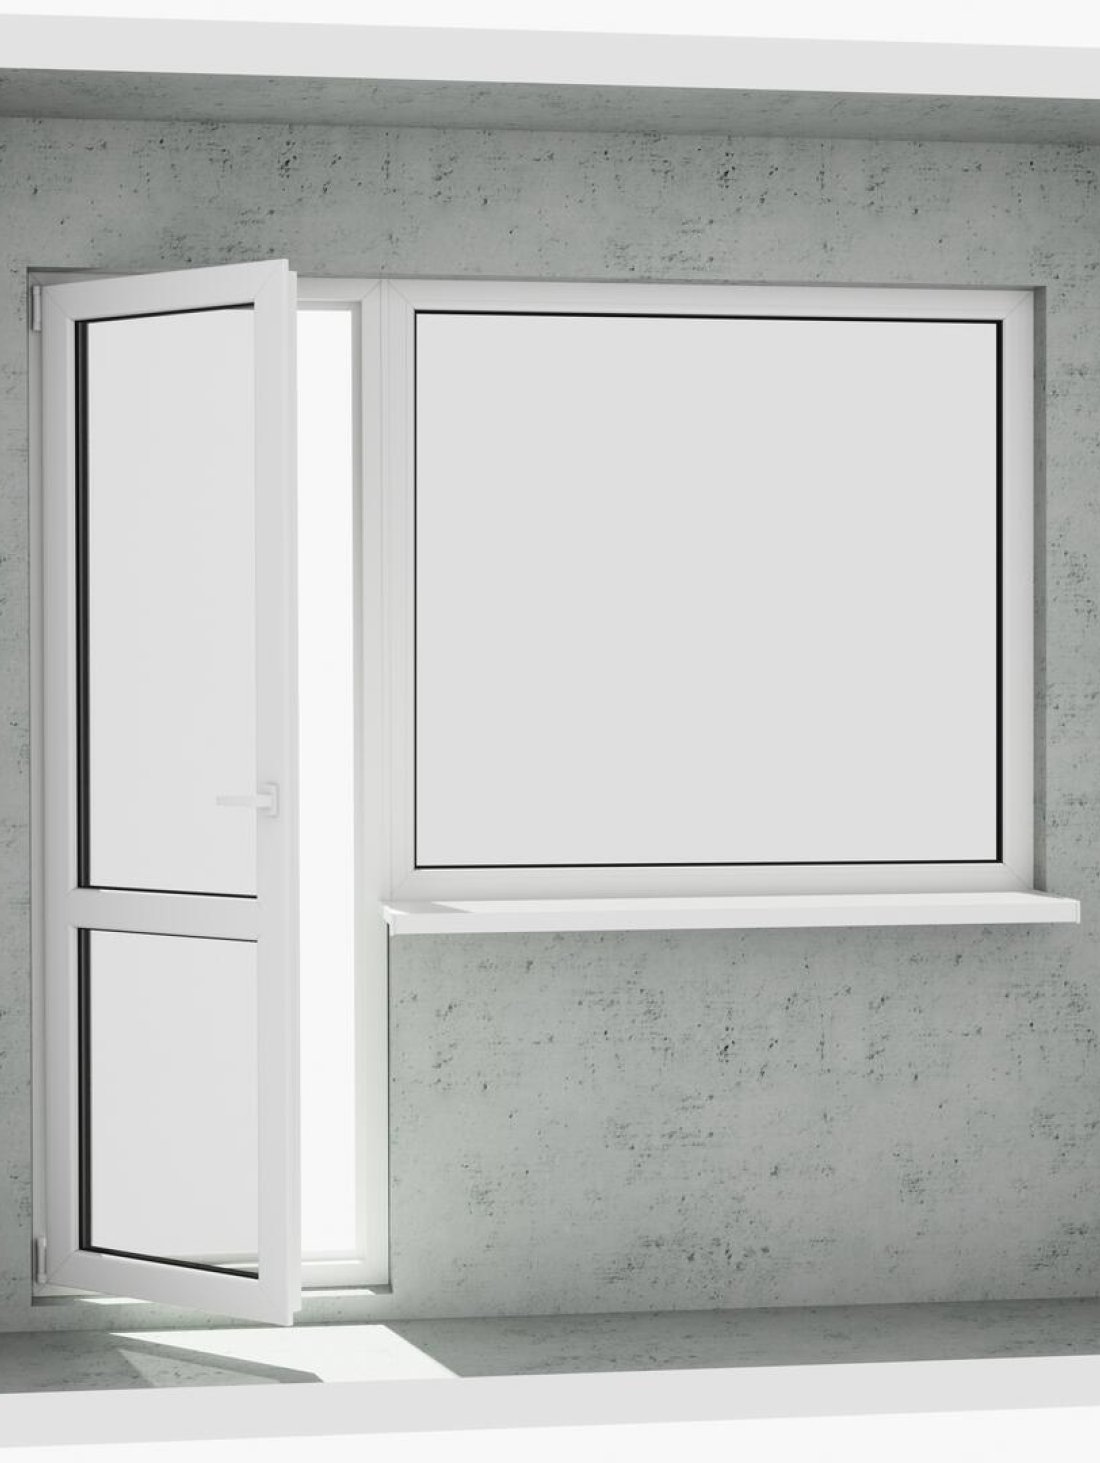 Выход на лоджию (балкон): классический белый металлопластиковый балконный блок (в двери есть режим проветривания, окно не открывается) - Купить